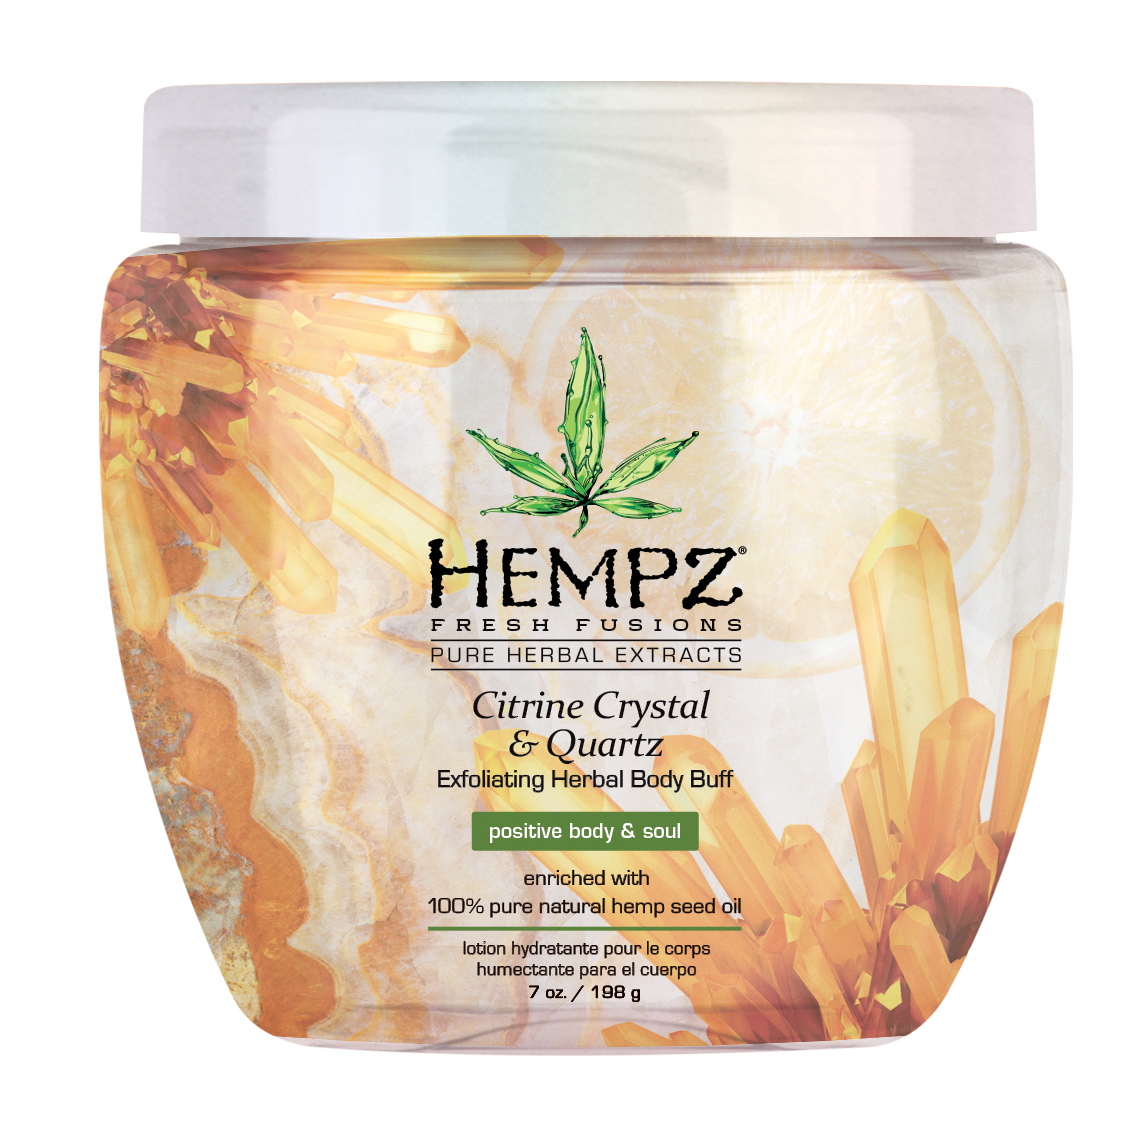 Hempz Citrine Crystal and Quartz Herbal Body Buff 198g - интернет-магазин профессиональной косметики Spadream, изображение 29592